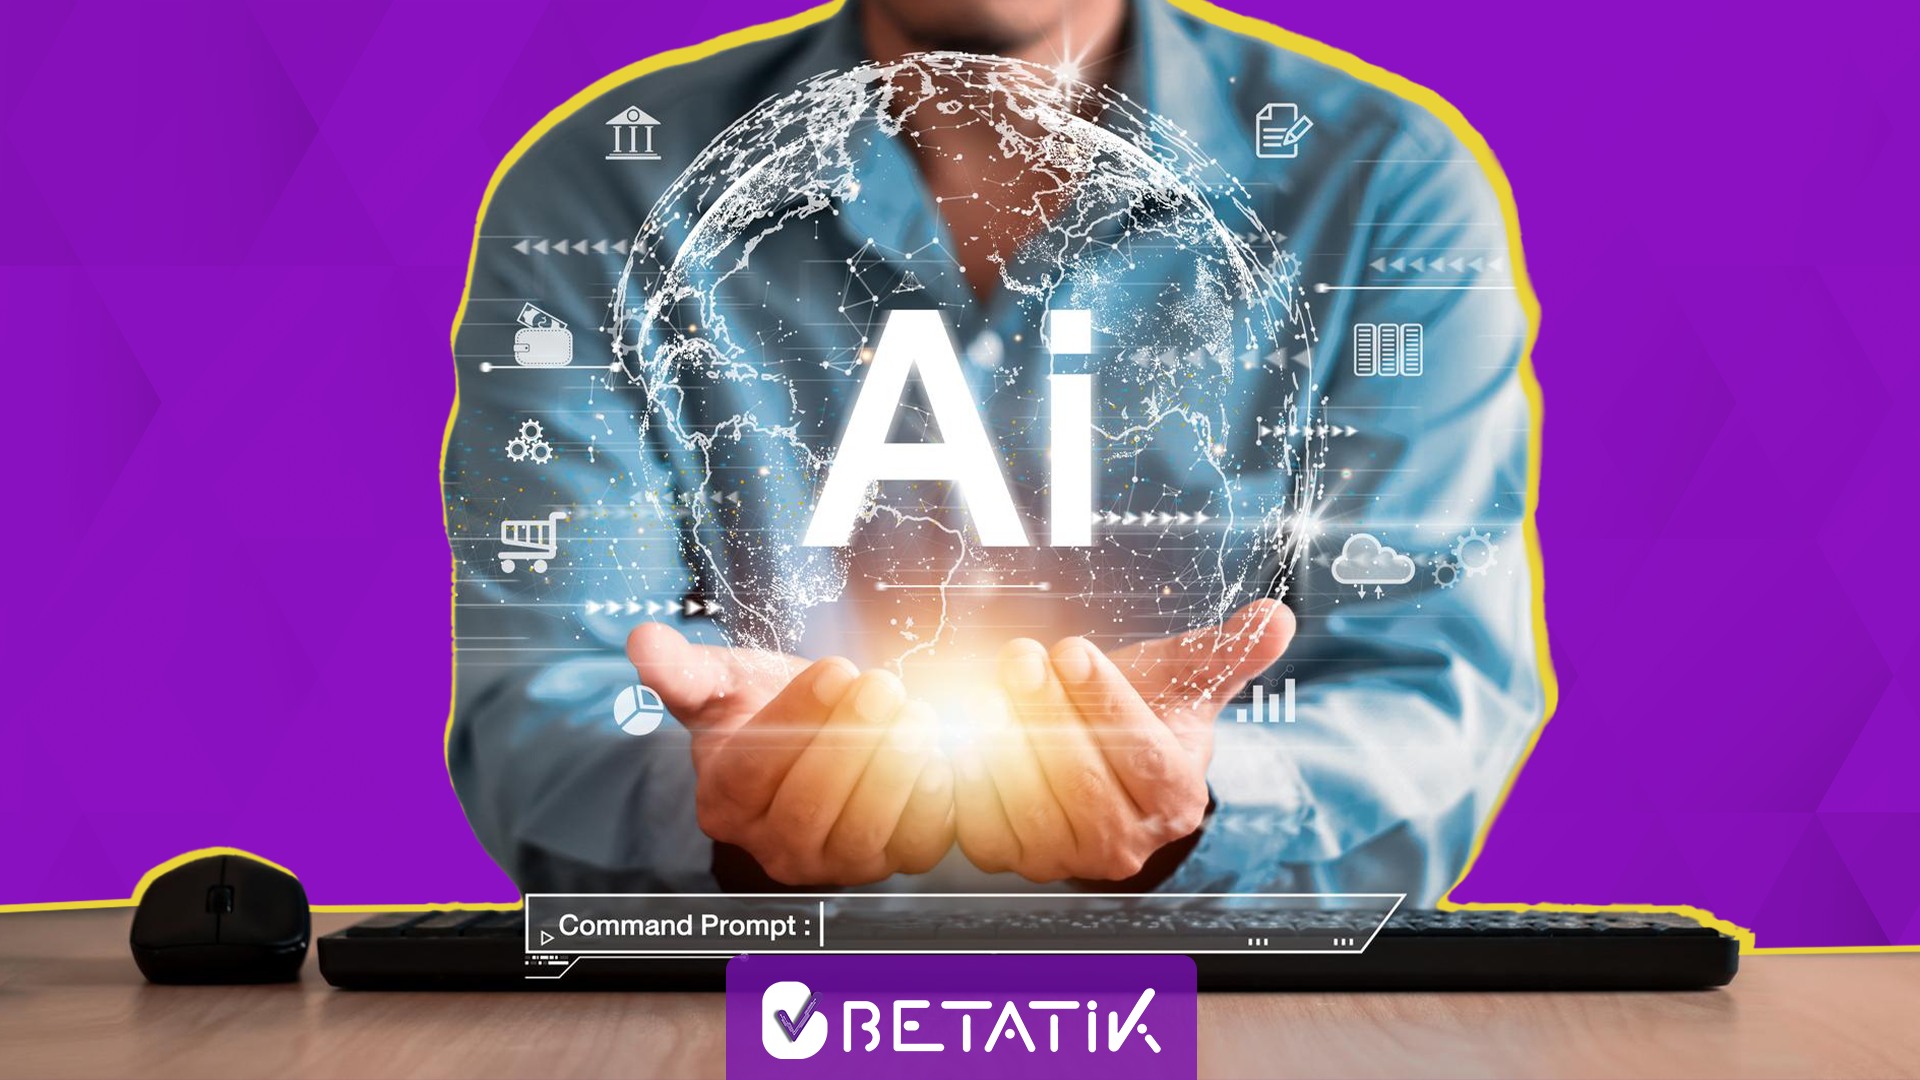 متخصص هوش مصنوعی(AI) کیست و چه فرصت ها و چالش هایی دارد!؟